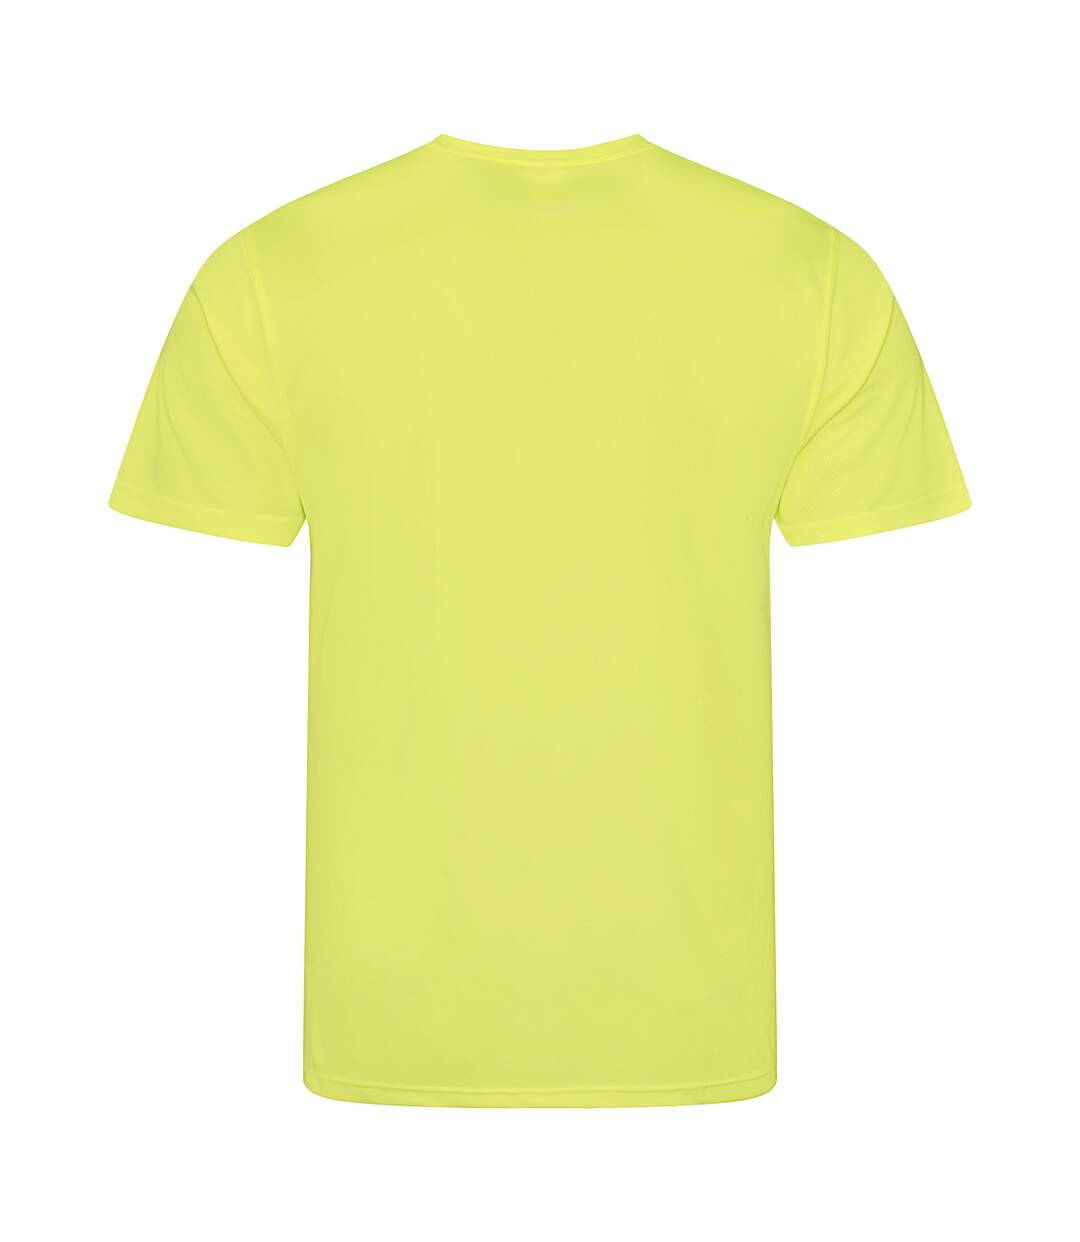 AWDis - T-shirt performance - Homme (Jaune électrique) - UTRW683